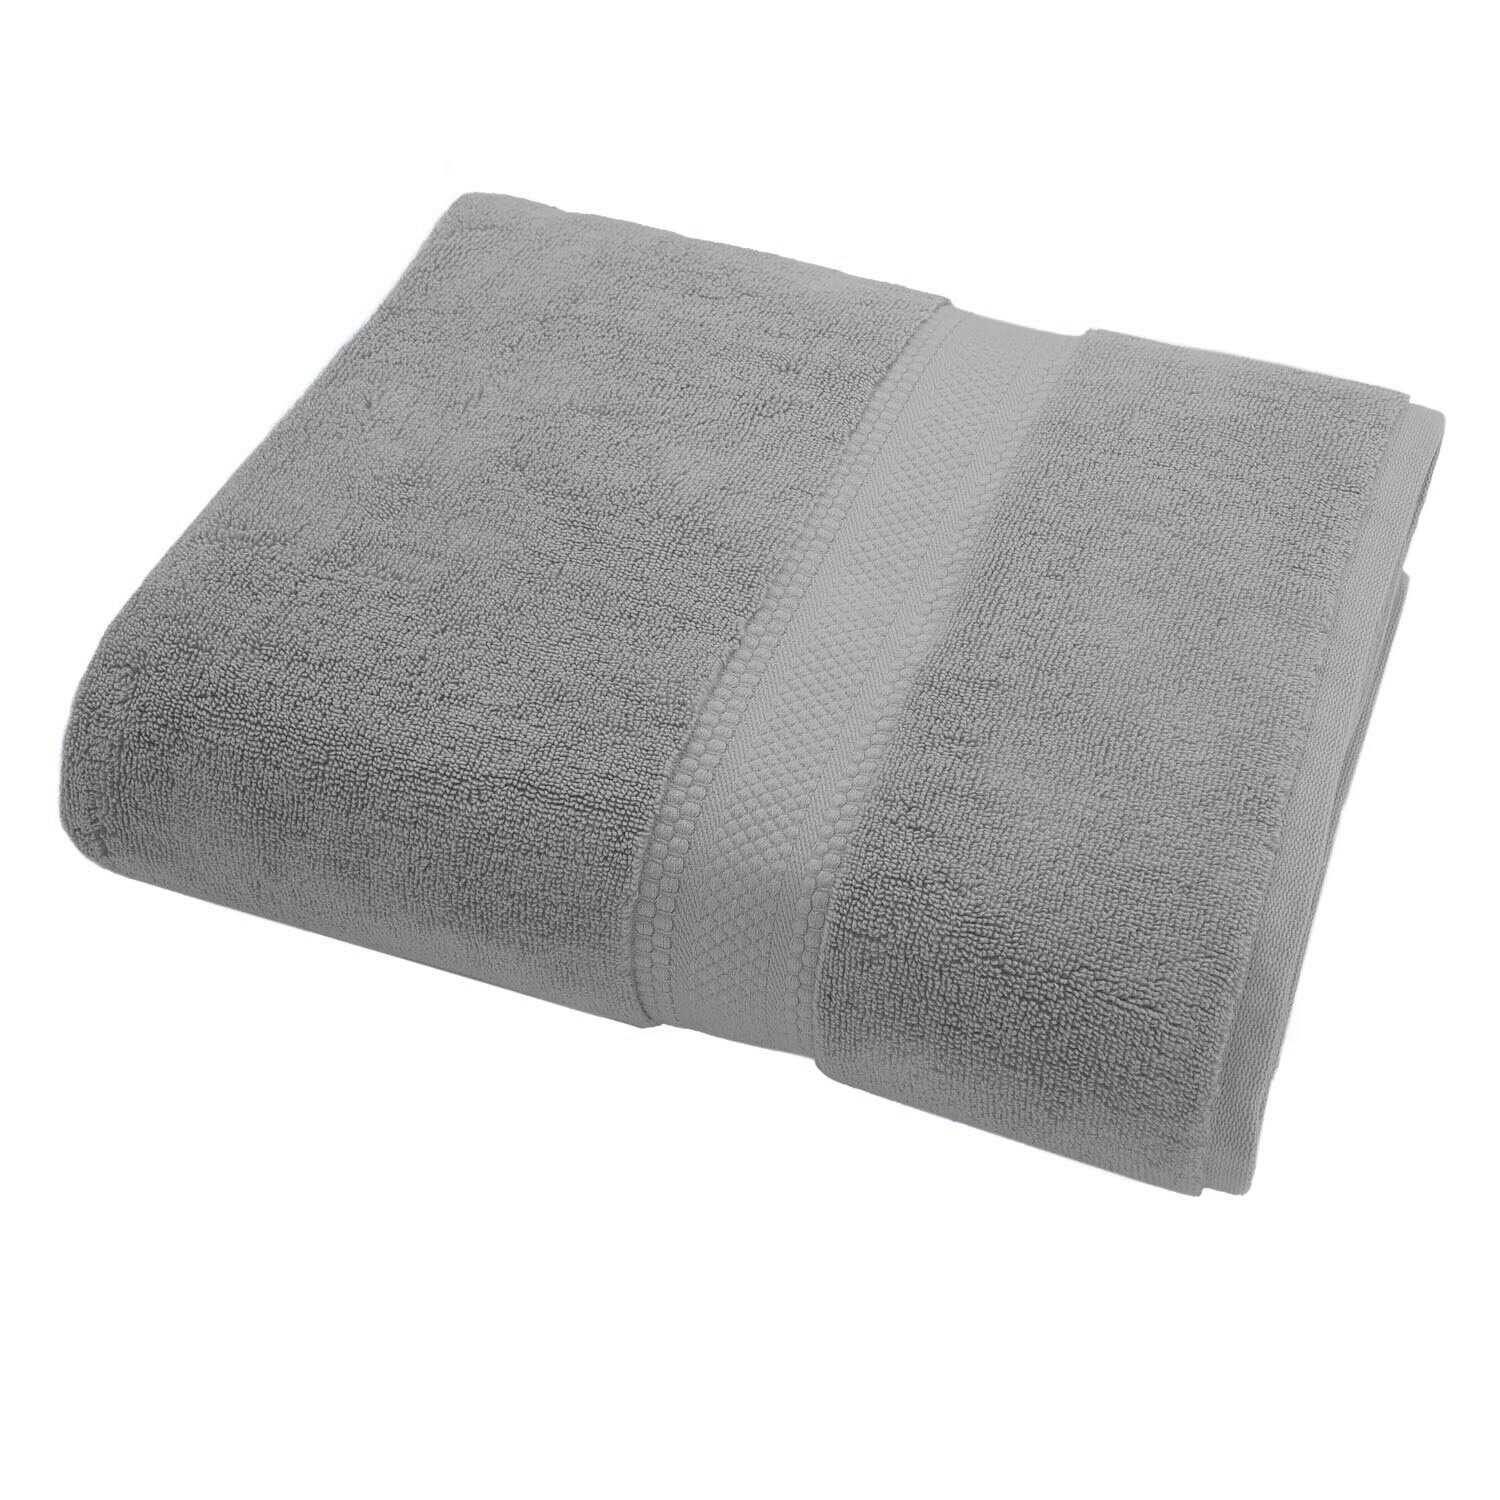 Glacier Grey Hand Towel Deluxe - Glacier Grey Image 1